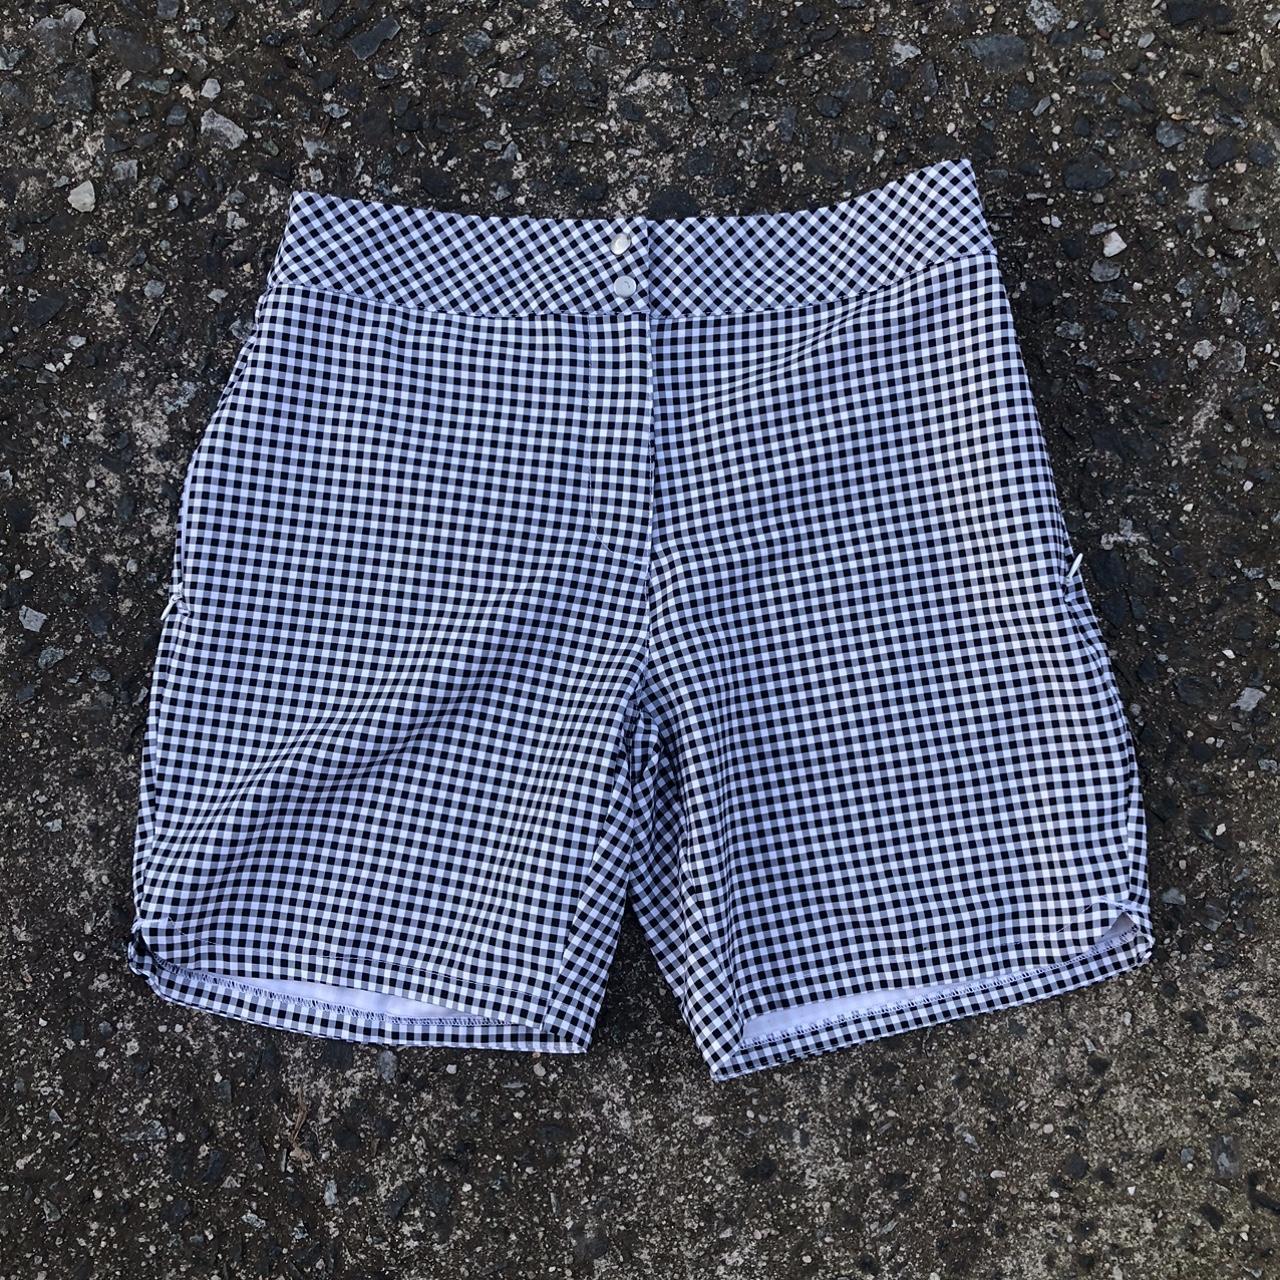 black & white gingham shorts -Maggie lane / size xs... - Depop